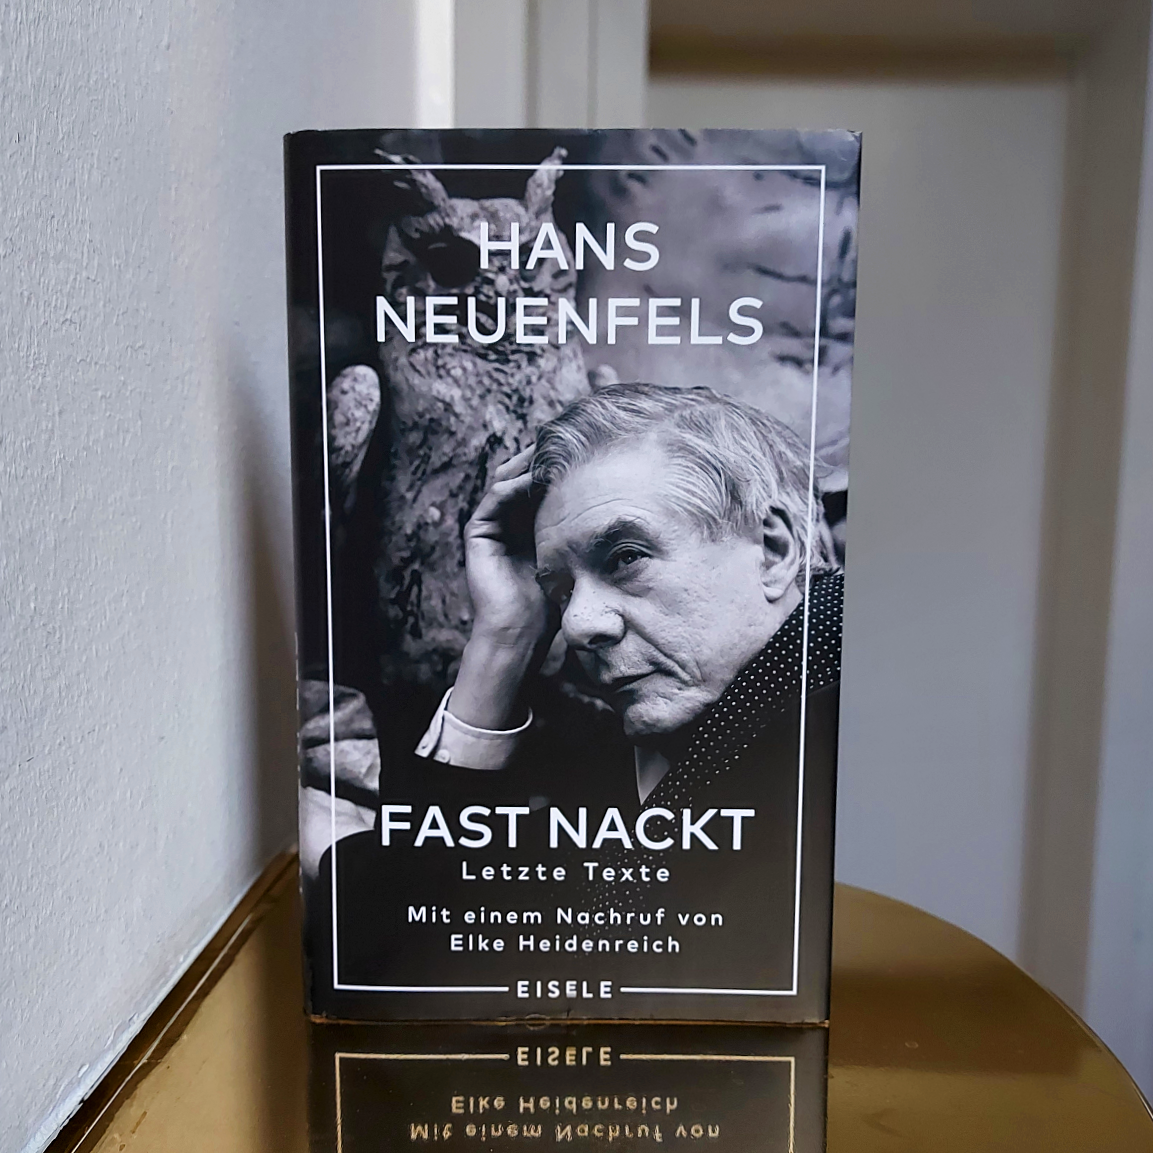 Cover von Hans Neuenfels' Buch "Fast nackt"